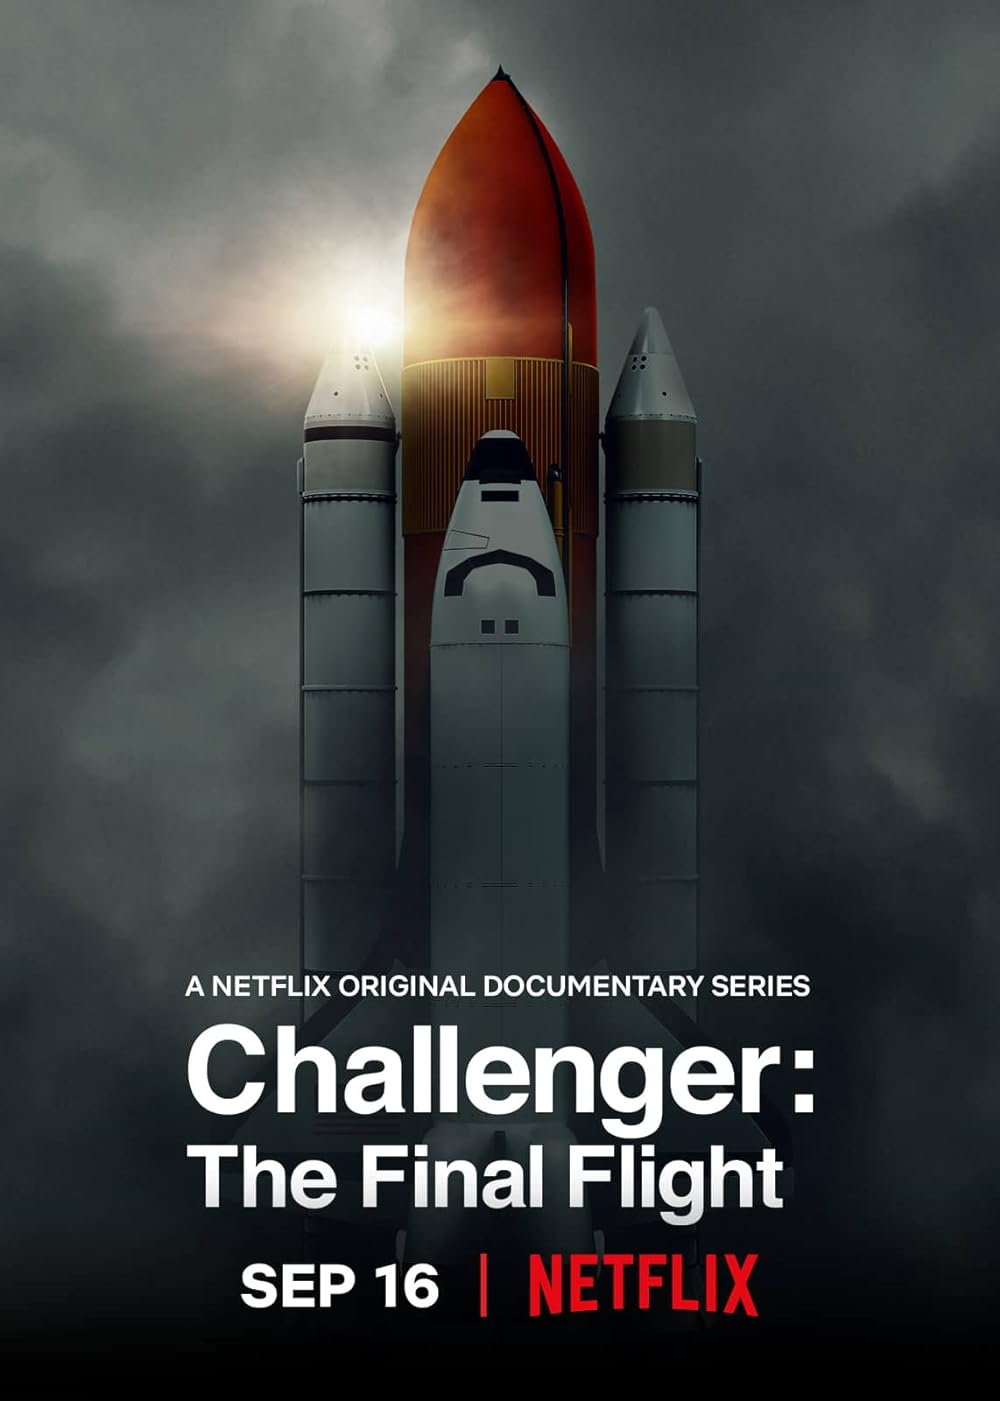 Challenger: The Final Flight (2020) S1 EP2 HELP 640Kbps 23.976Fps 48Khz 5.1Ch DD+ NF E-AC3 Turkish Audio TAC